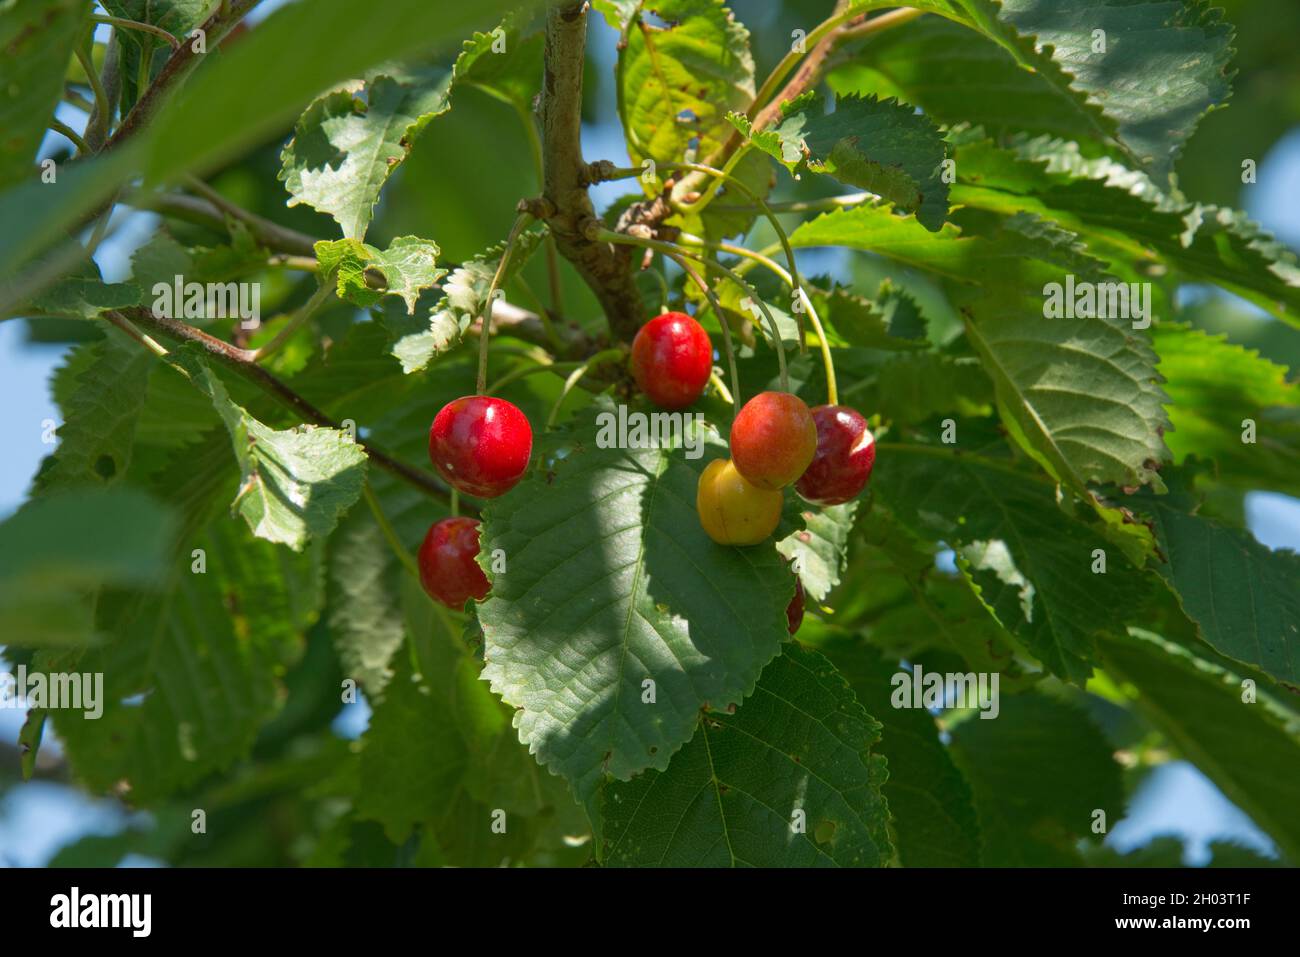 Fruits rouges mûrs de cerise sauvage (Prunus avium) avec des feuilles matures d'un grand arbre, nourriture pour les thrushes, les oiseaux noirs et autres oiseaux dans la saison, Berkshir Banque D'Images